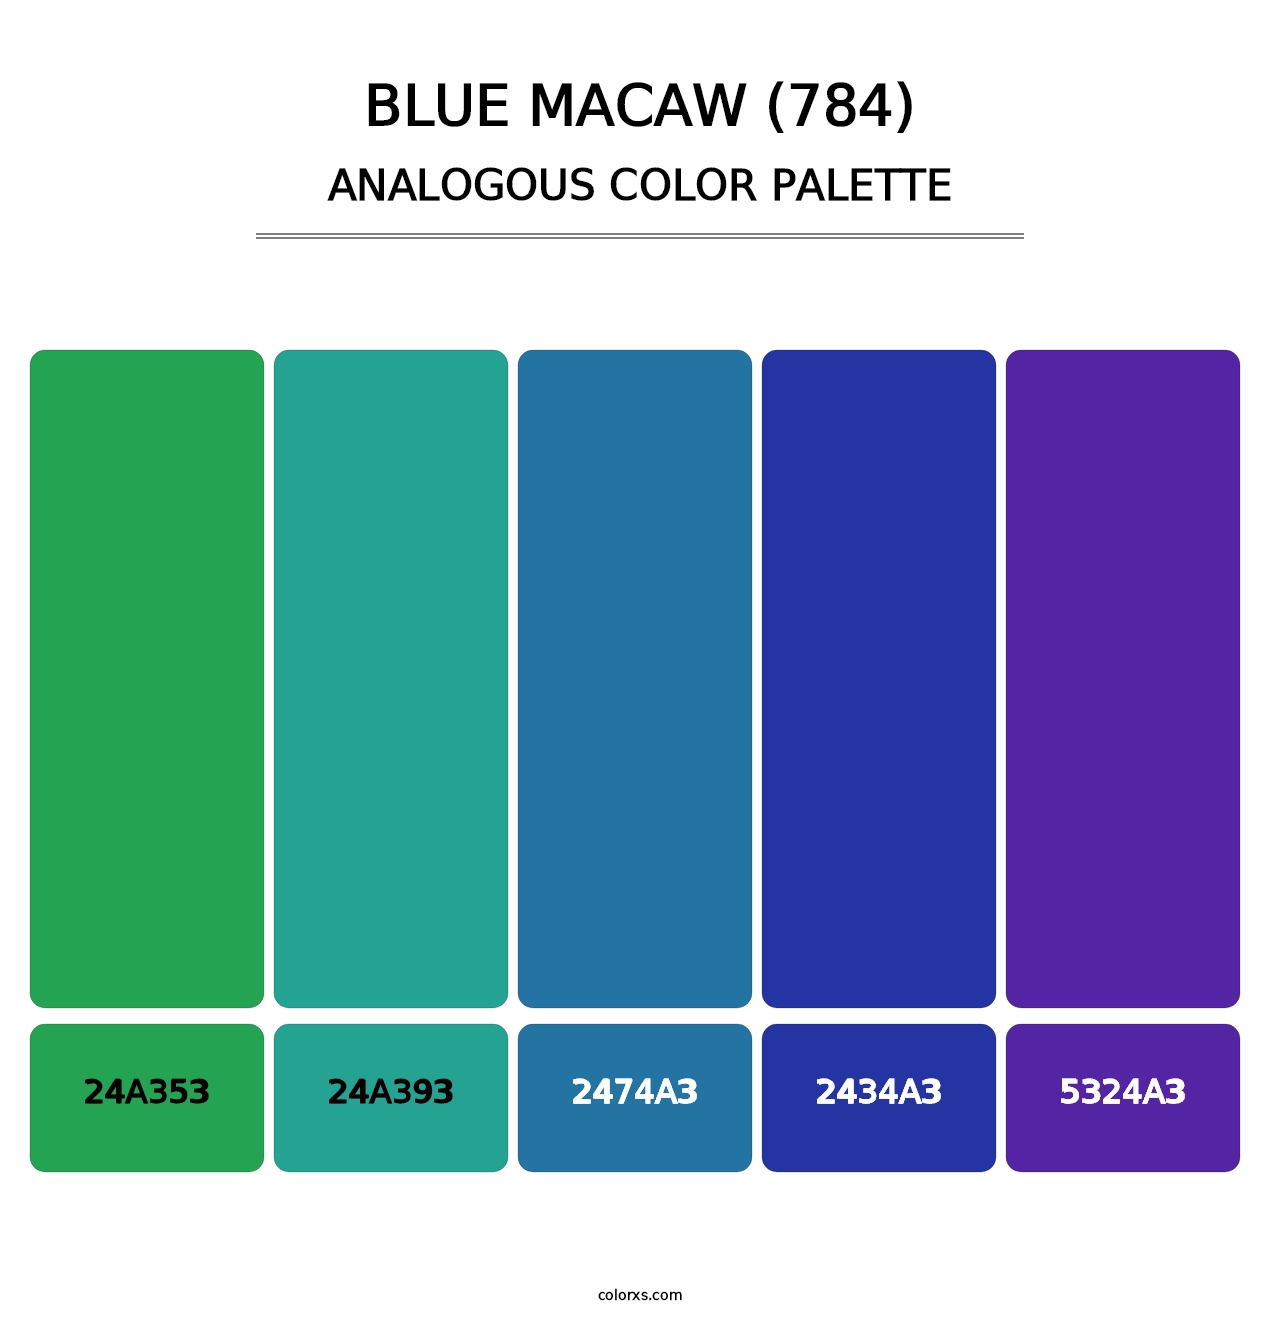 Blue Macaw (784) - Analogous Color Palette